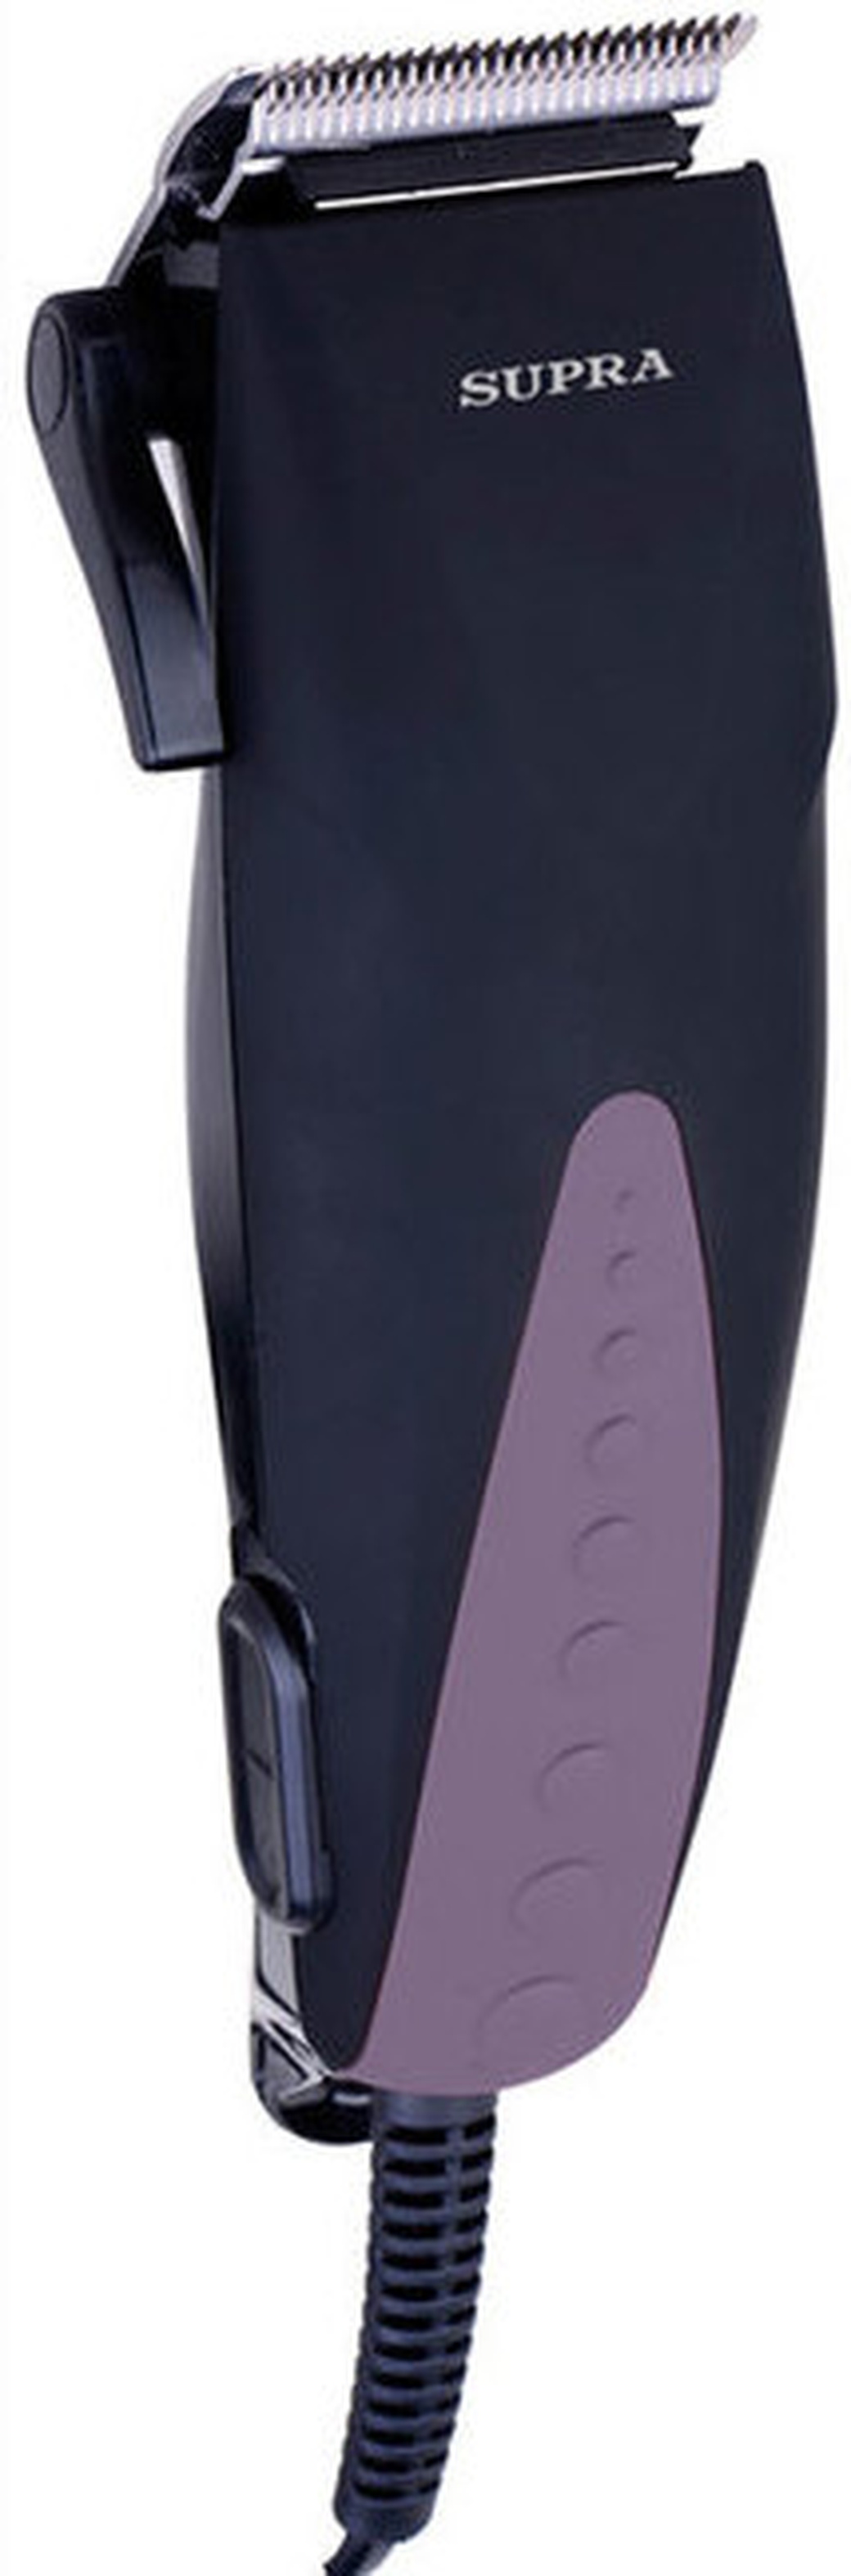 Машинка для стрижки Supra HCS-520 фиолетовый/черный 15Вт (насадок в компл:4шт) фото